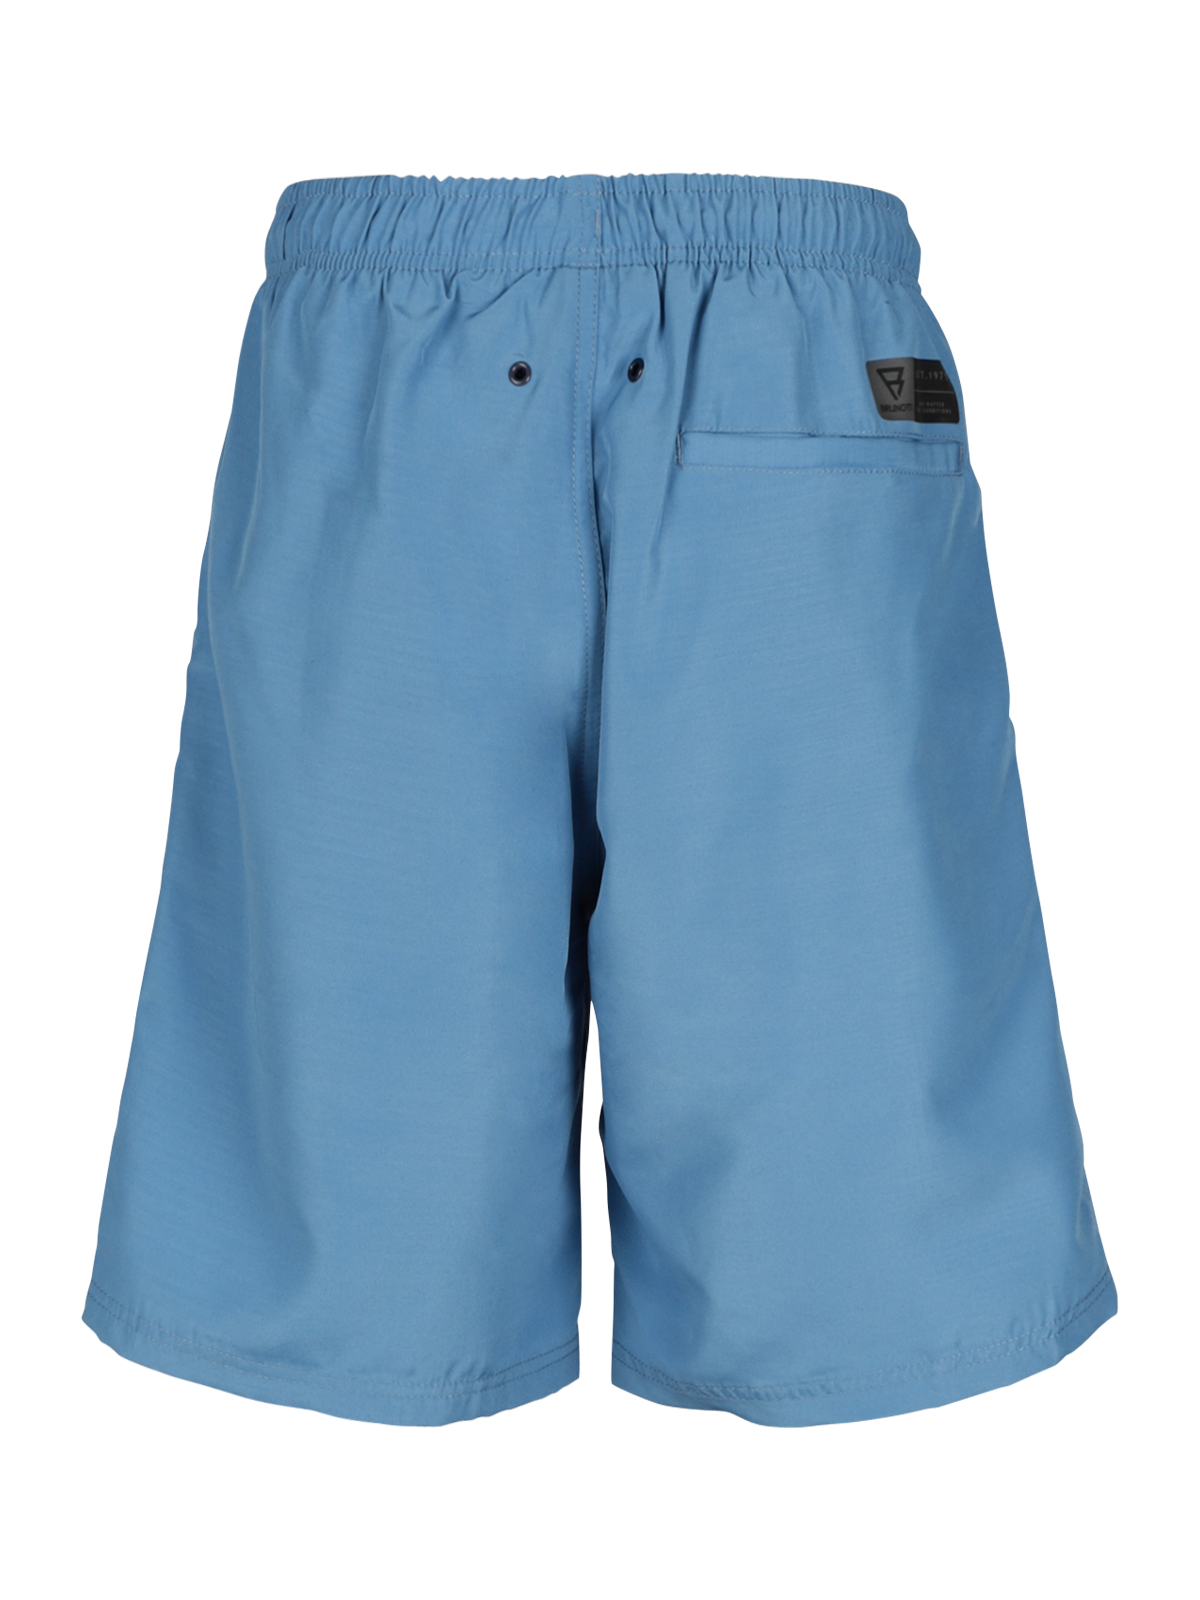 Hestey Boys Swim Shorts | Blue